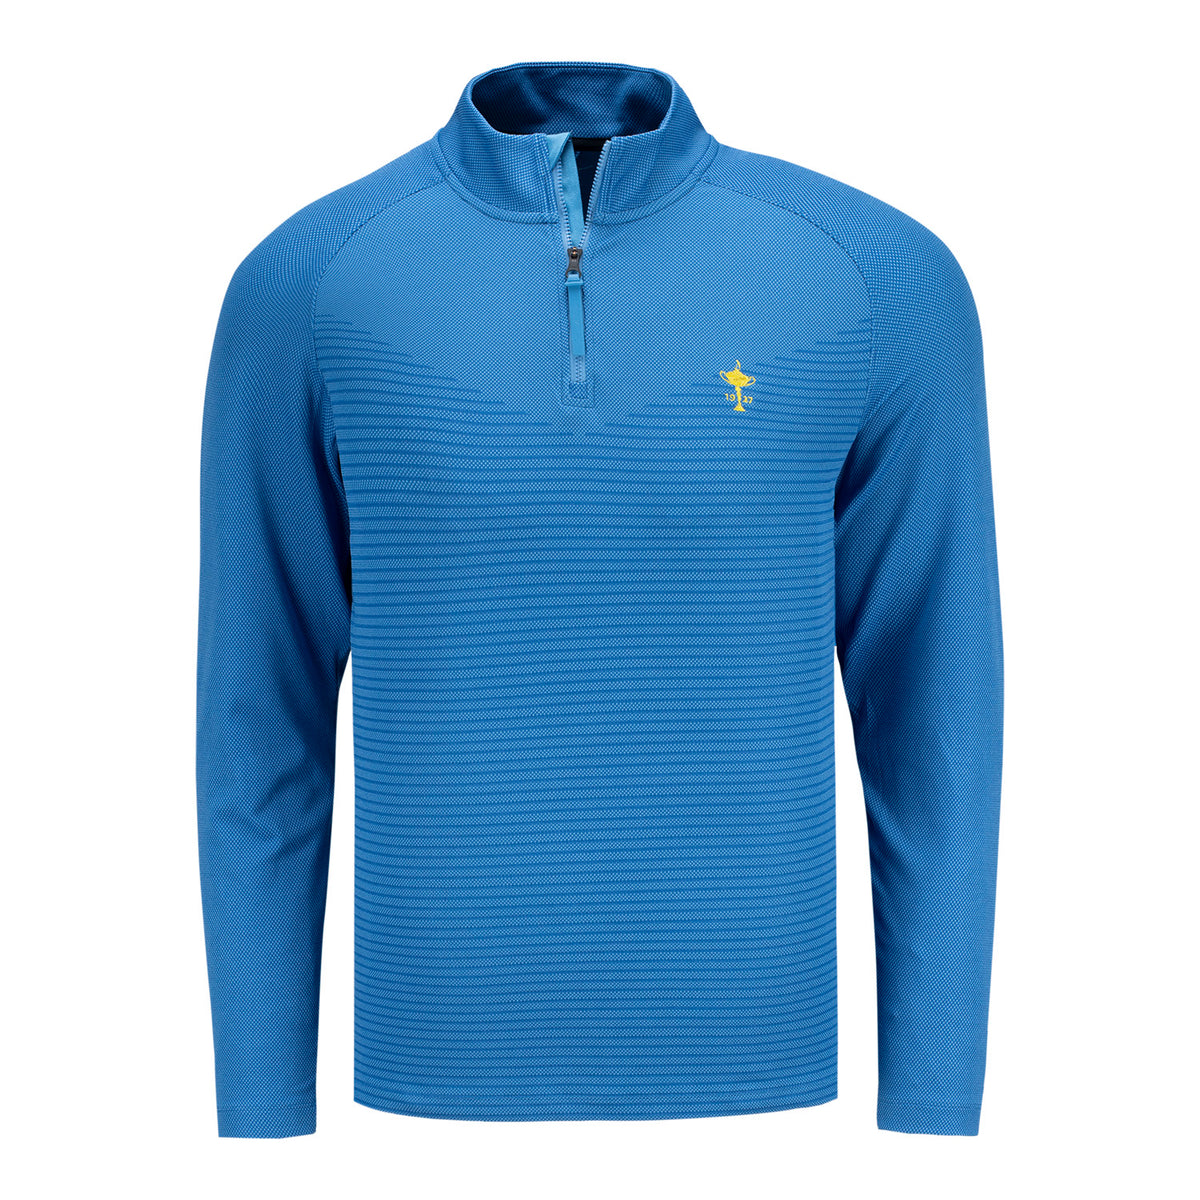 Nike Vapor Trophy Half-Zip Pullover in Blue- Front View